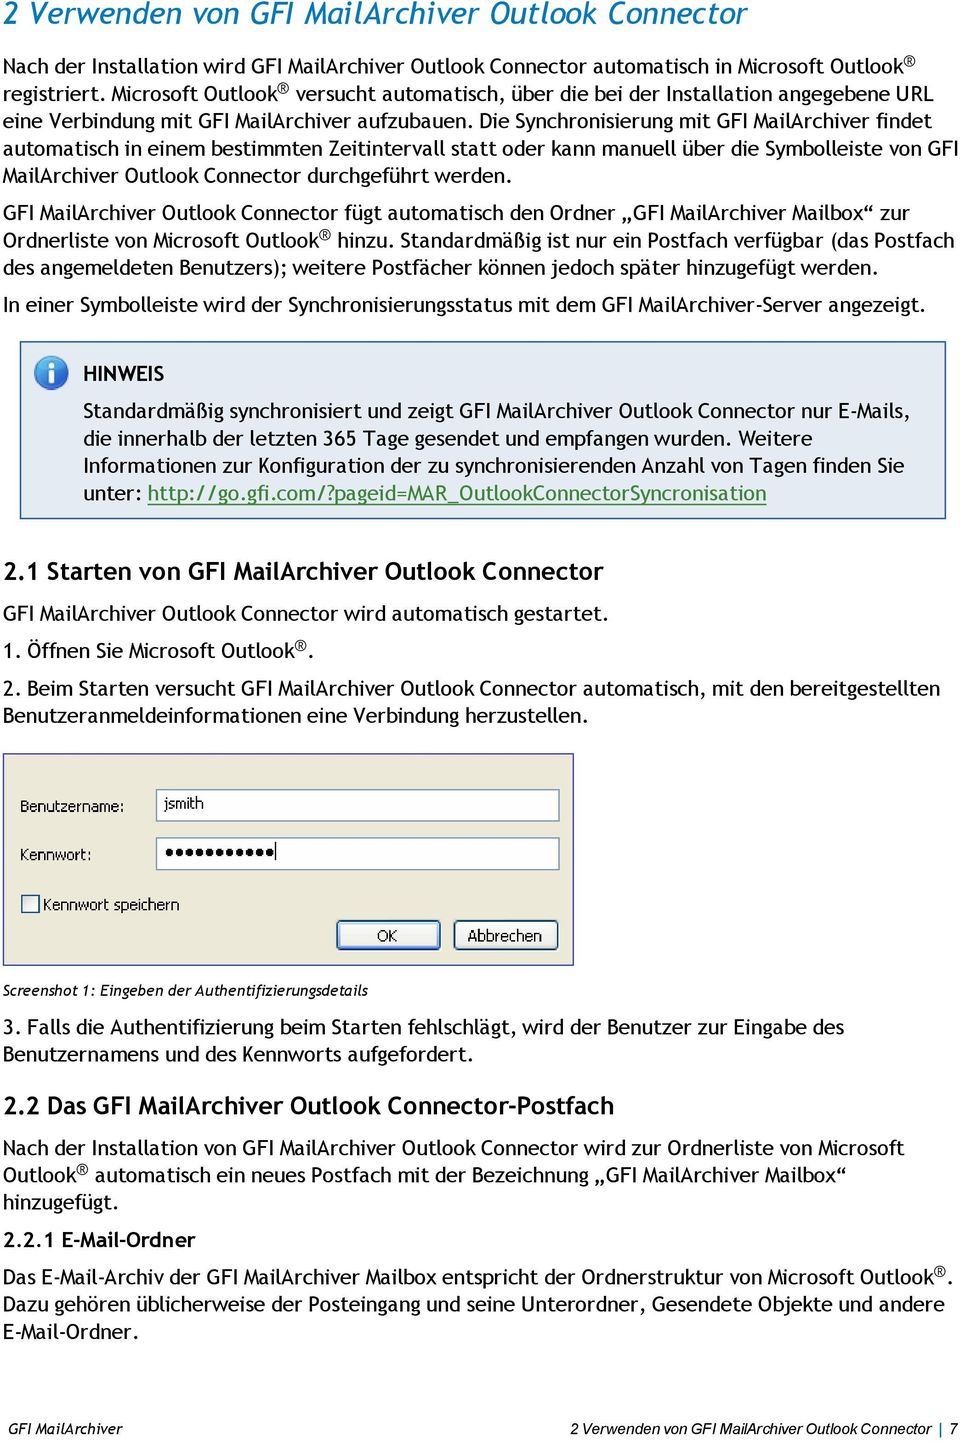 Die Synchronisierung mit GFI MailArchiver findet automatisch in einem bestimmten Zeitintervall statt oder kann manuell über die Symbolleiste von GFI MailArchiver Outlook Connector durchgeführt werden.